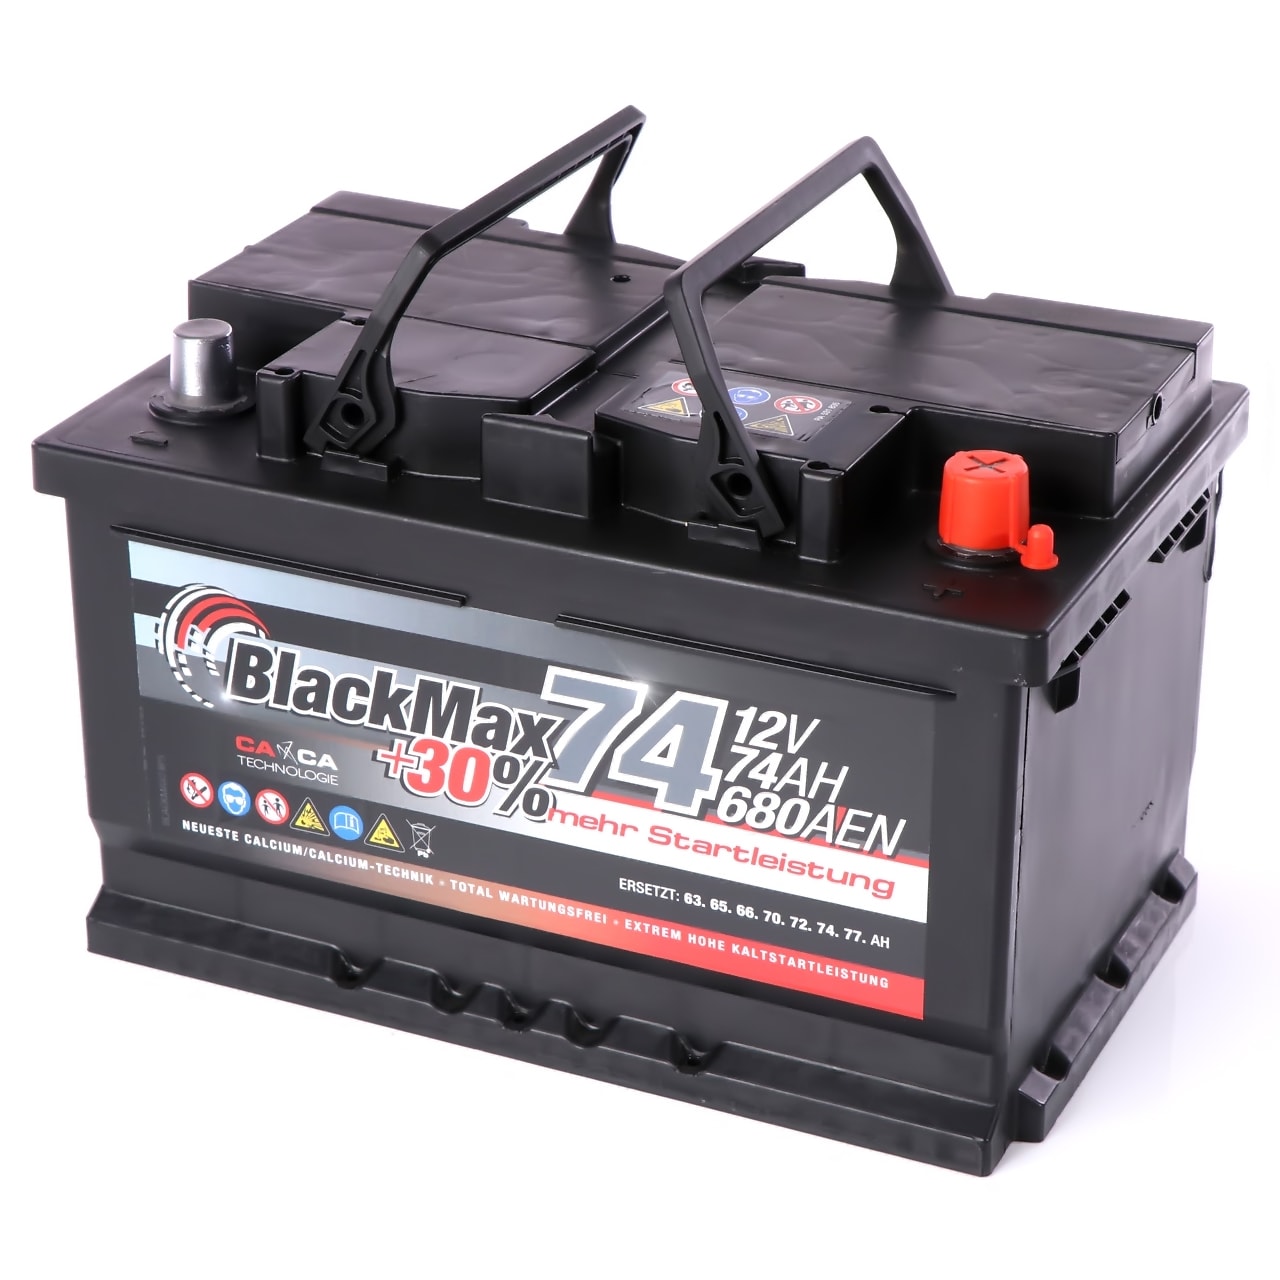 BlackMax Plus 30 Autobatterie 12V 74Ah 680A für PKW